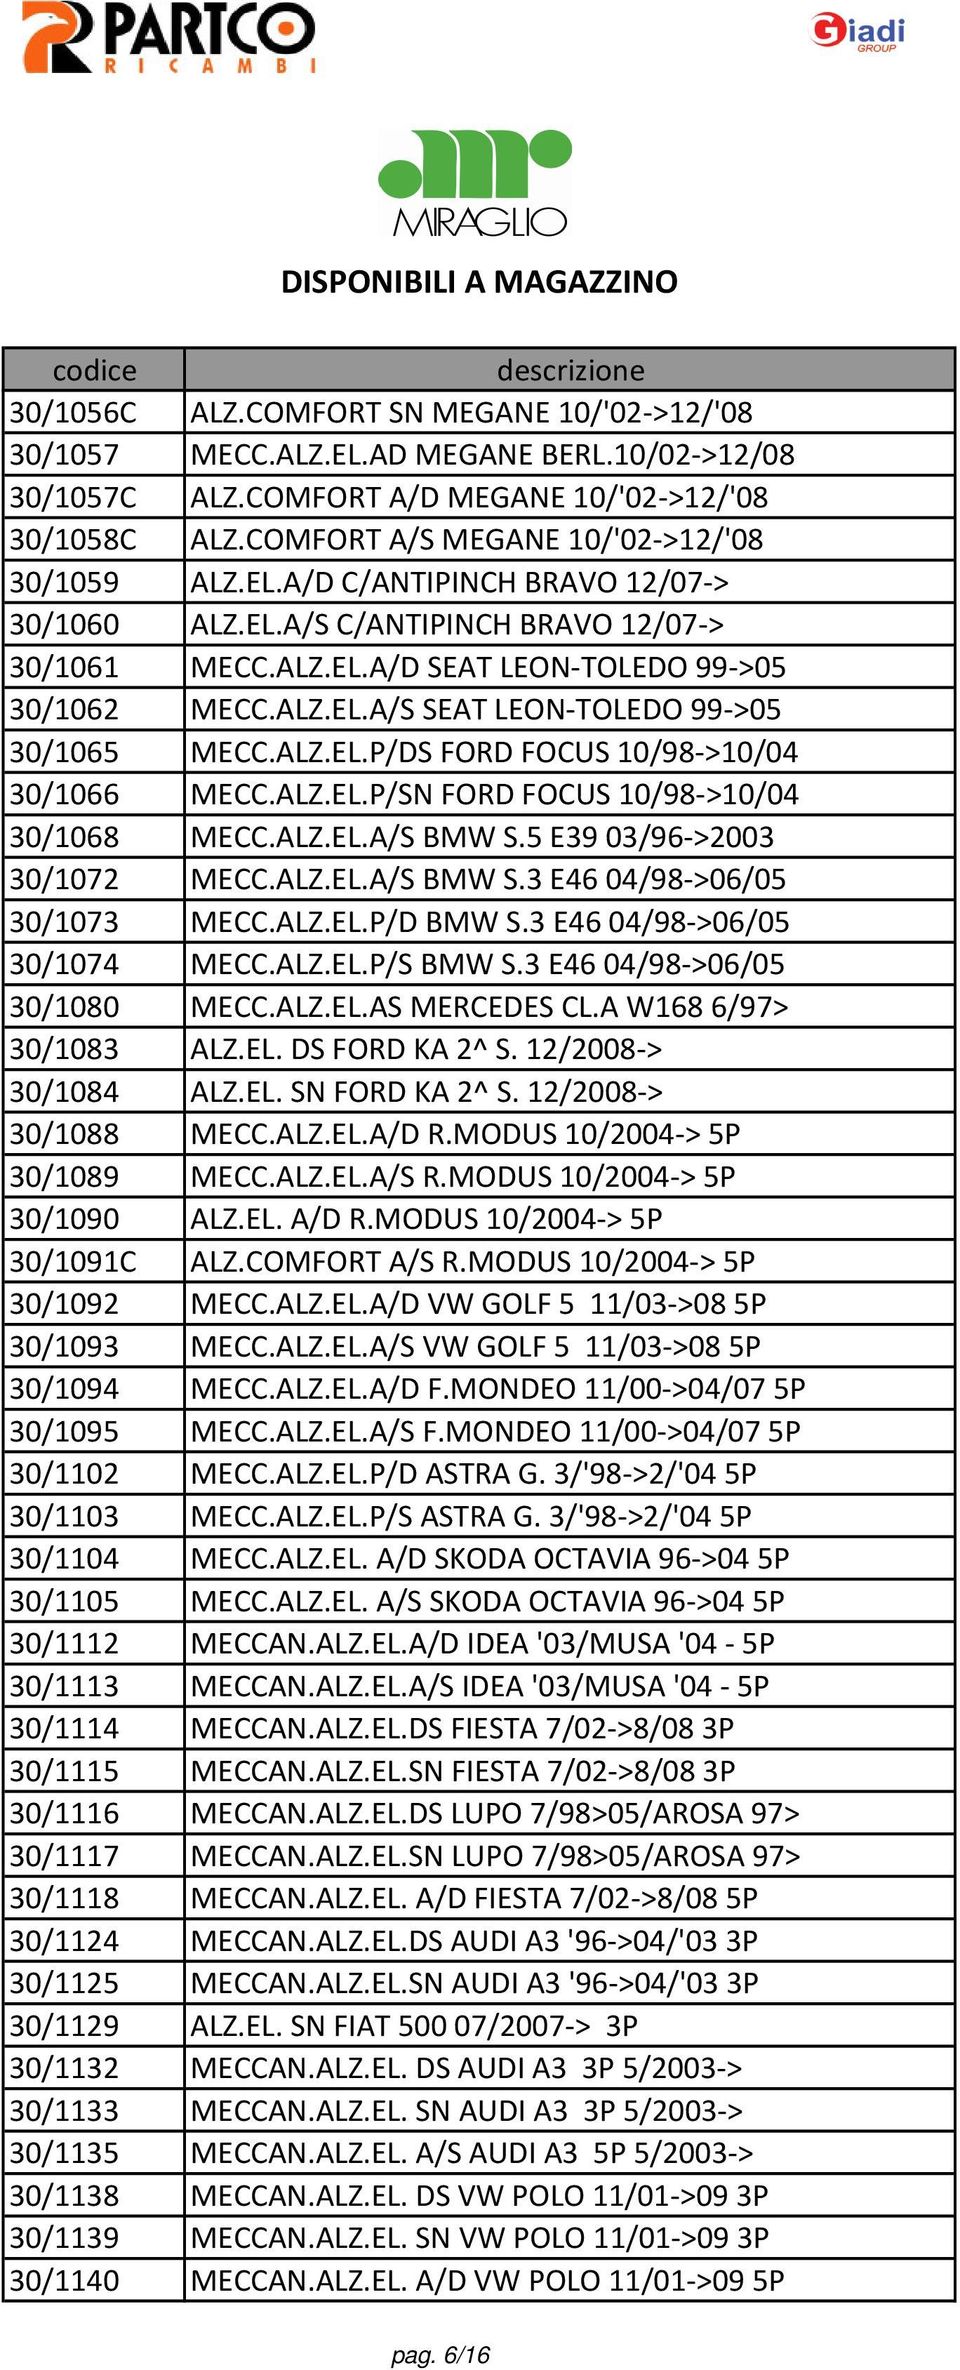 ALZ.EL.P/SN FORD FOCUS 10/98->10/04 30/1068 MECC.ALZ.EL.A/S BMW S.5 E39 03/96->2003 30/1072 MECC.ALZ.EL.A/S BMW S.3 E46 04/98->06/05 30/1073 MECC.ALZ.EL.P/D BMW S.3 E46 04/98->06/05 30/1074 MECC.ALZ.EL.P/S BMW S.